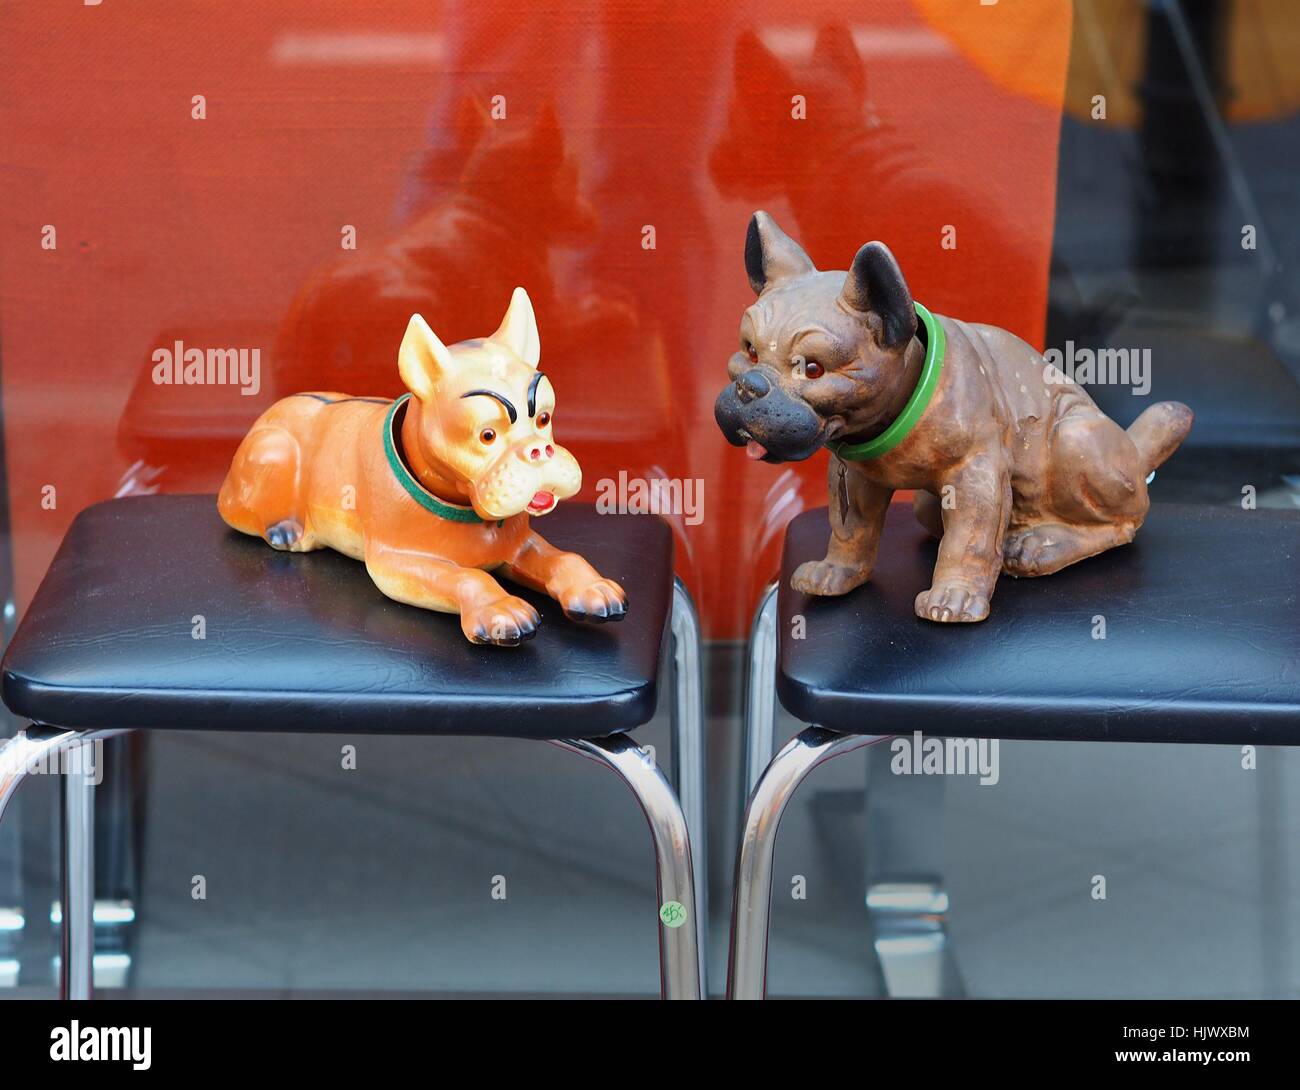 Foto-Serie "Hunde in Berlin" - Käse Hund Zahlen im Fenster eine billige  Second-Hand-Laden in Berlin am 15. Februar 2016 gesehen werden. Berlin wird  oft die "Hauptstadt der Hunde" genannt. Dieses Bild ist